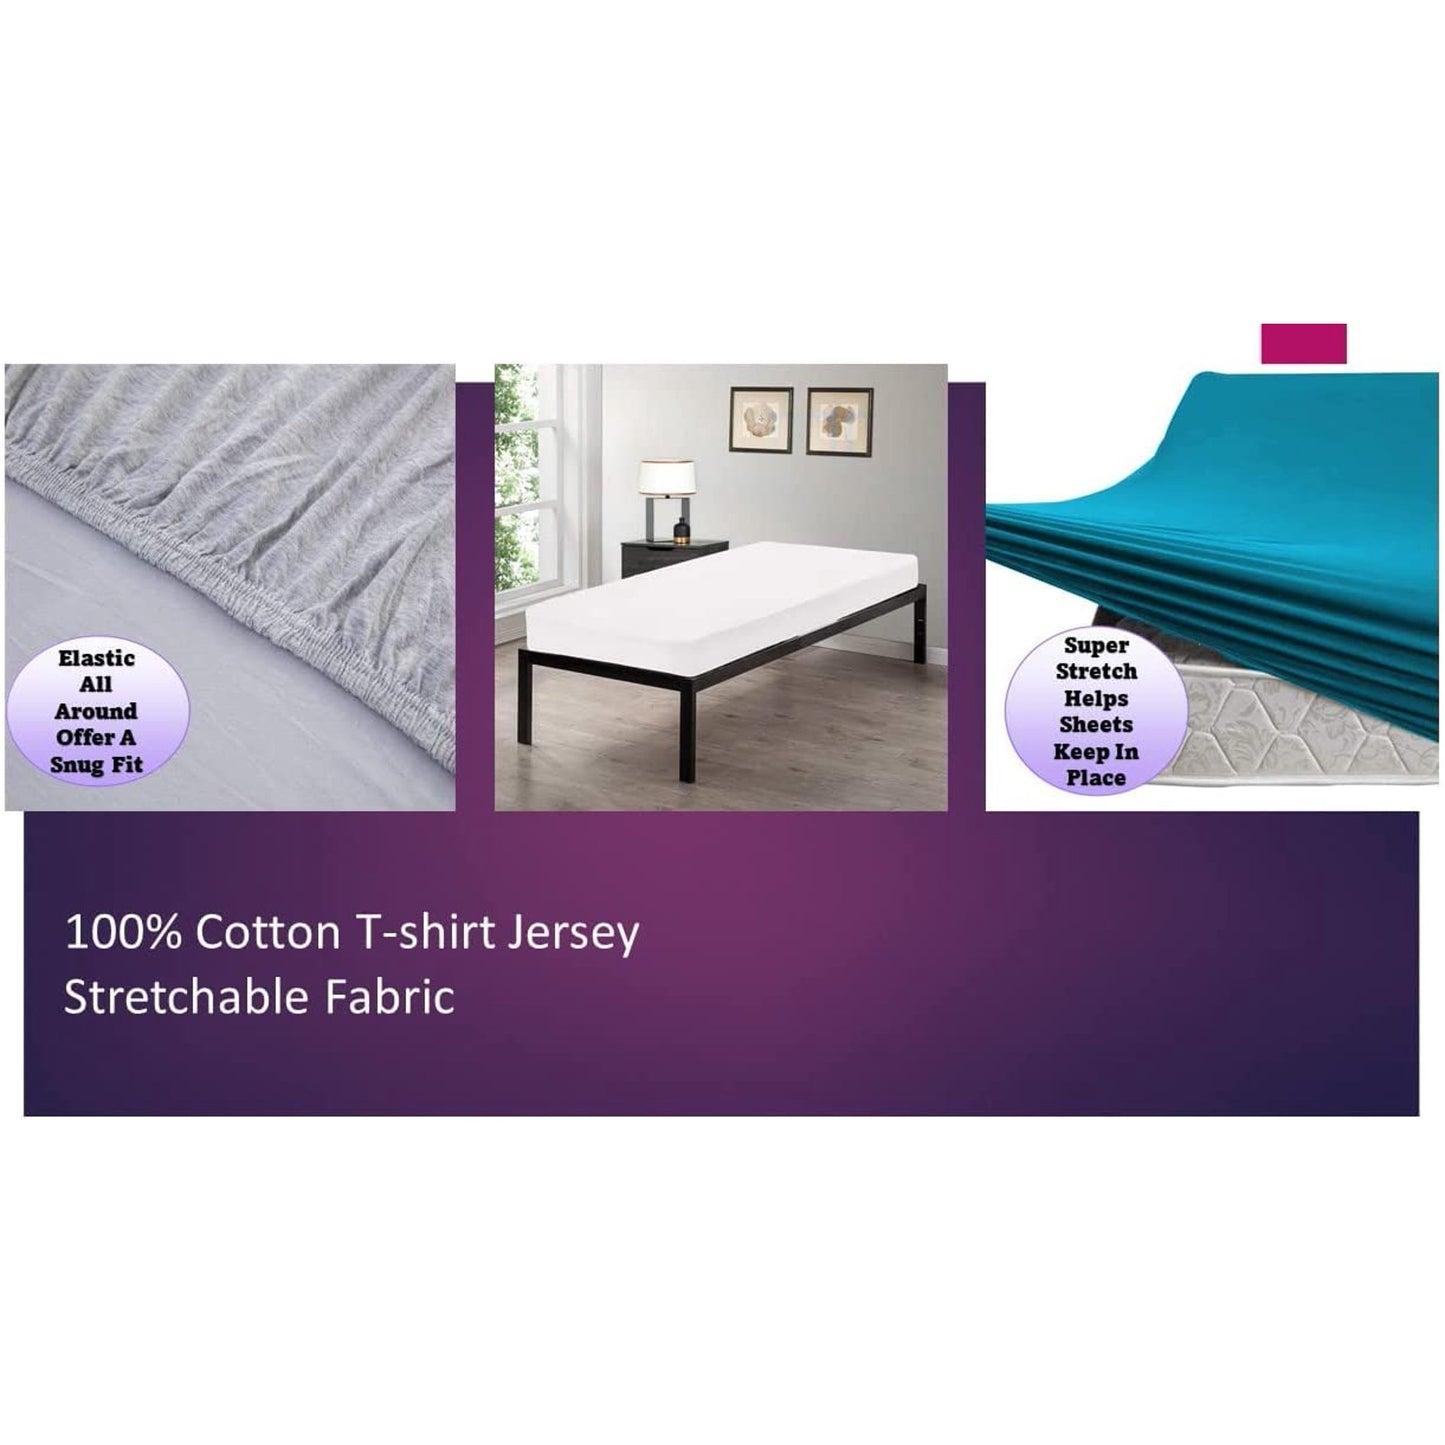 100% Combed T-Shirt Cotton Jersey Knit Camp Sheet Set, 1 Fitted cot Sheet, 1 Flat Sheet, 1 Standard Pillow case Light Pink